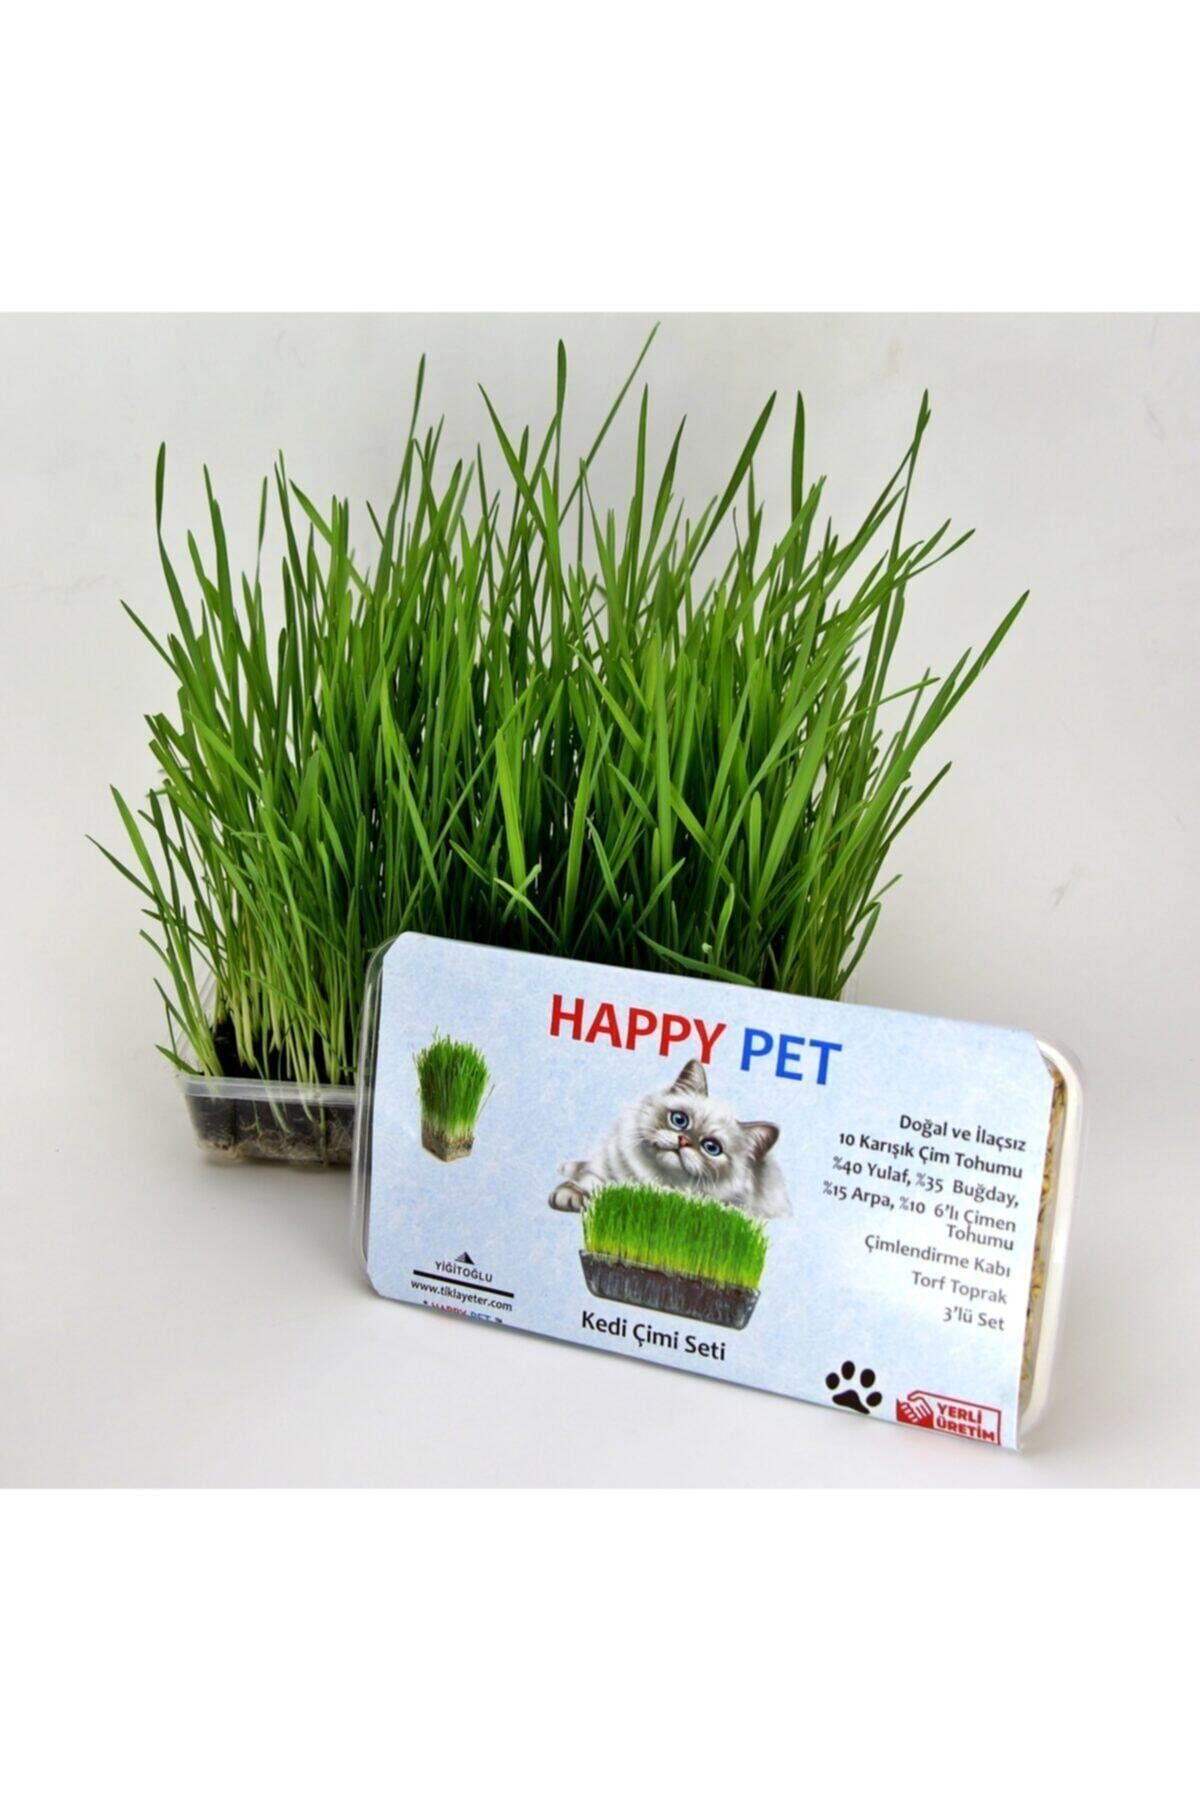 Happy Pet Kedi Çimi Kedi Otu Seti 100gr 6 Çeşit Tahıl Karışımı Ek Vitamin Mineral Tüy Yumağı Engeller